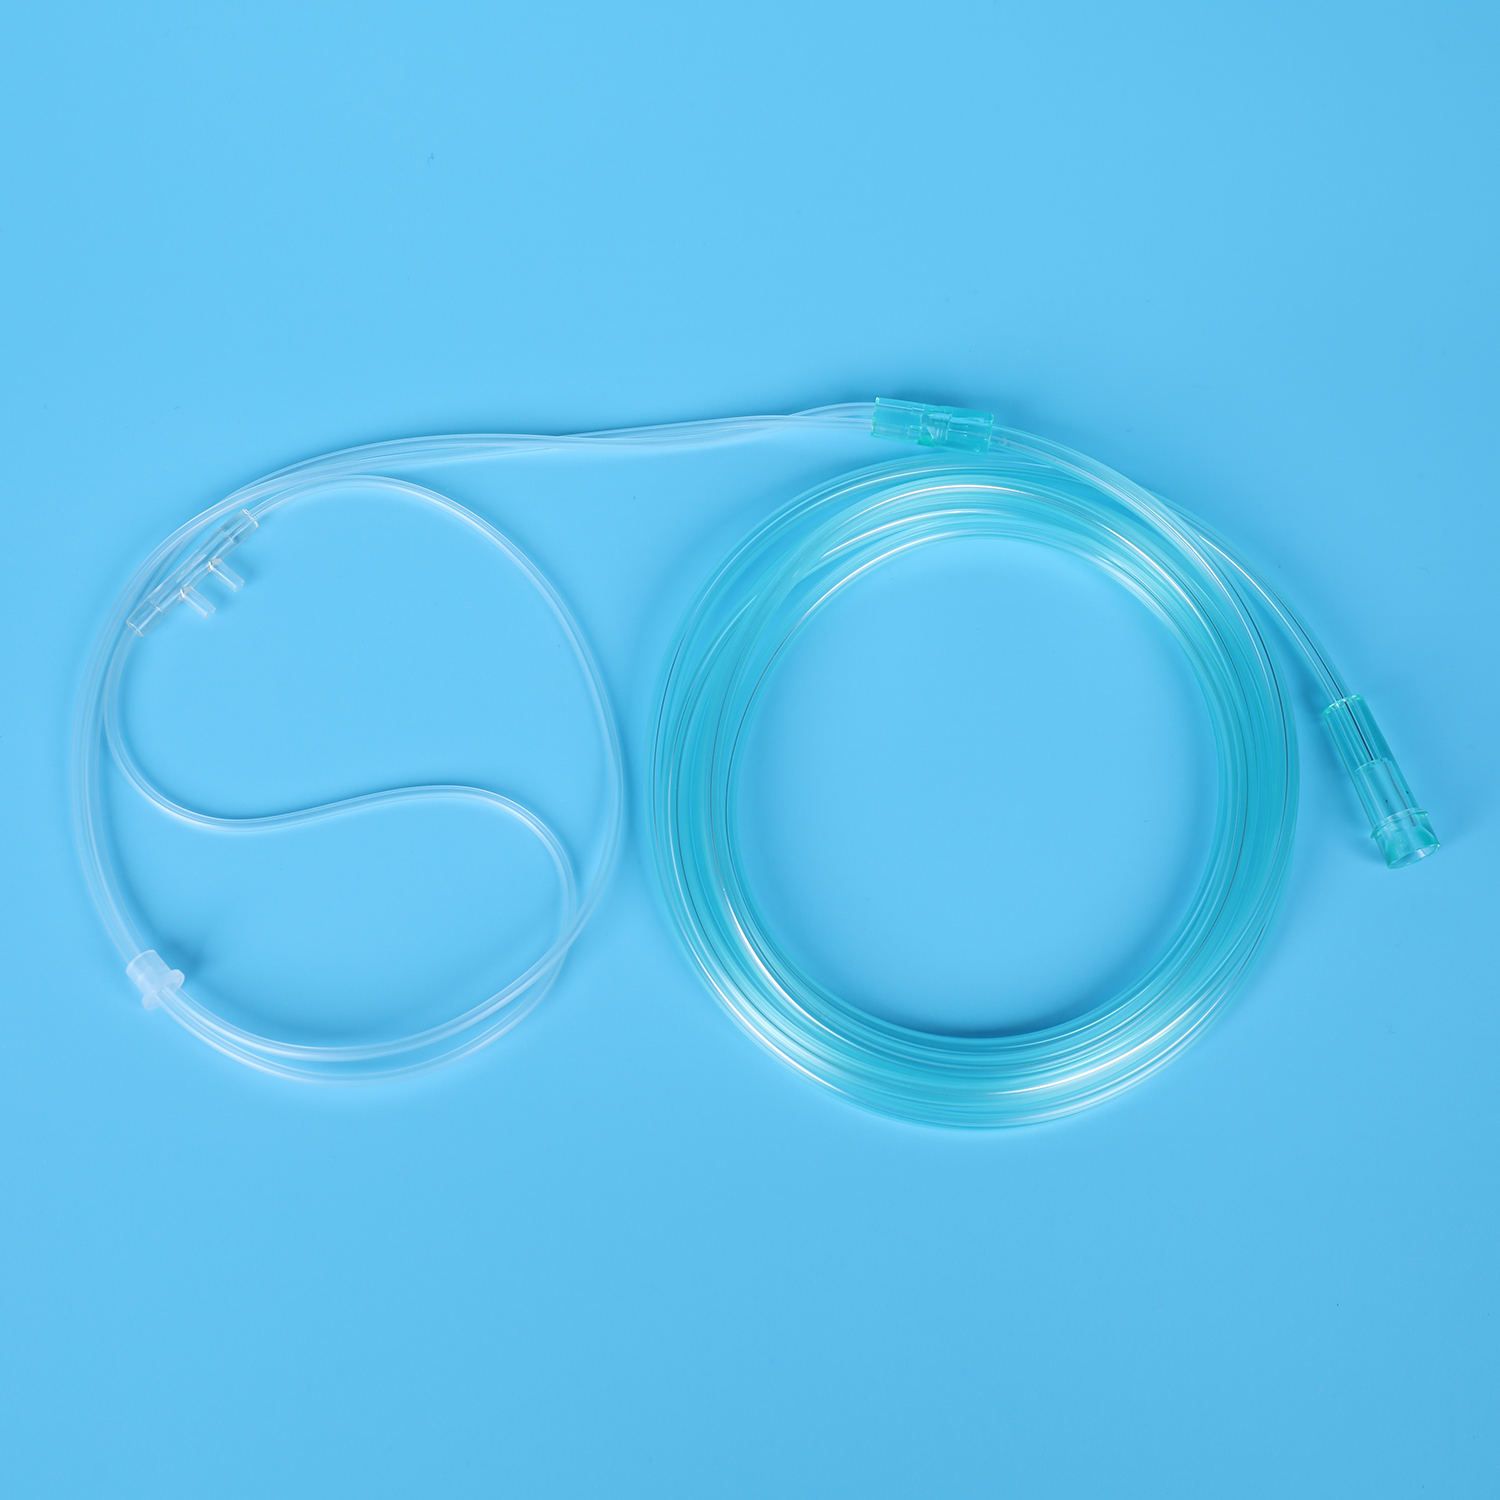 China Hersteller Einweg-Sauerstoff-Nasenkanüle PVC-transparenter Schlauch Medizinische Versorgung Medizinisches Material Sauerstofftherapiegerät mit weicher Spitze Sauerstoffkanüle